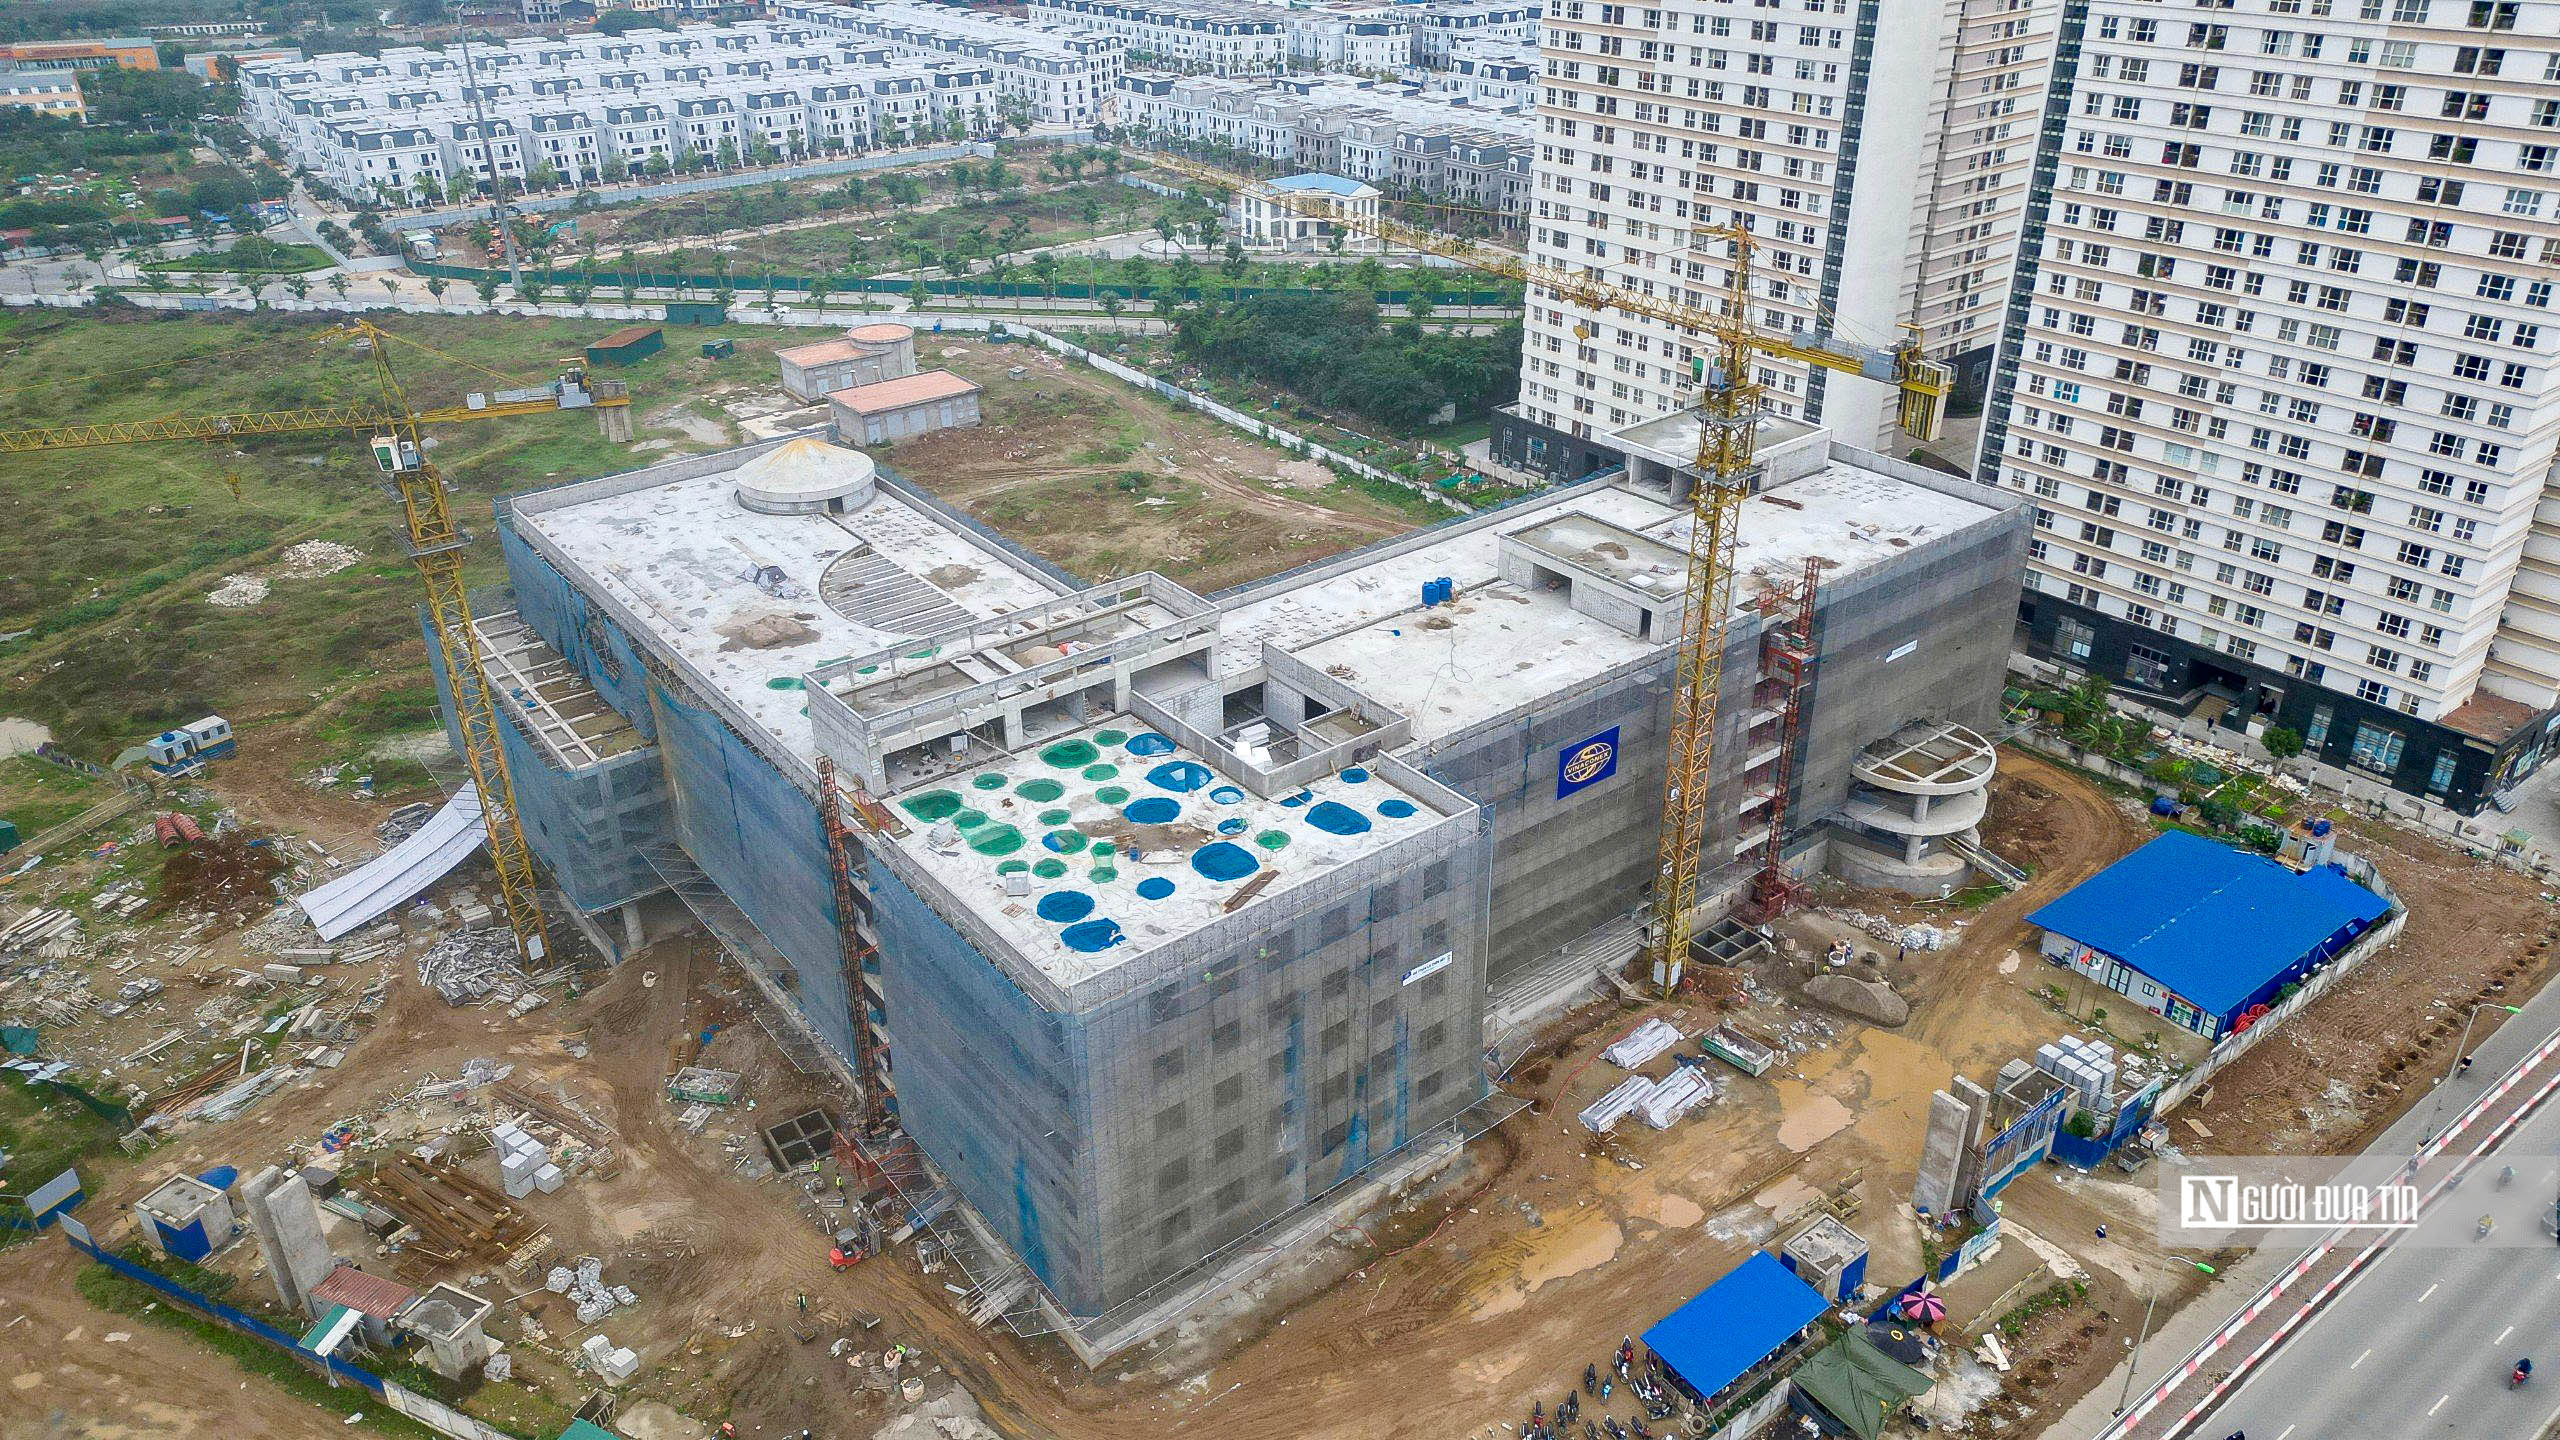 Bất động sản - Toàn cảnh Bệnh viện Nhi Hà Nội gần 800 tỷ đồng sau gần 1 năm thi công (Hình 4).